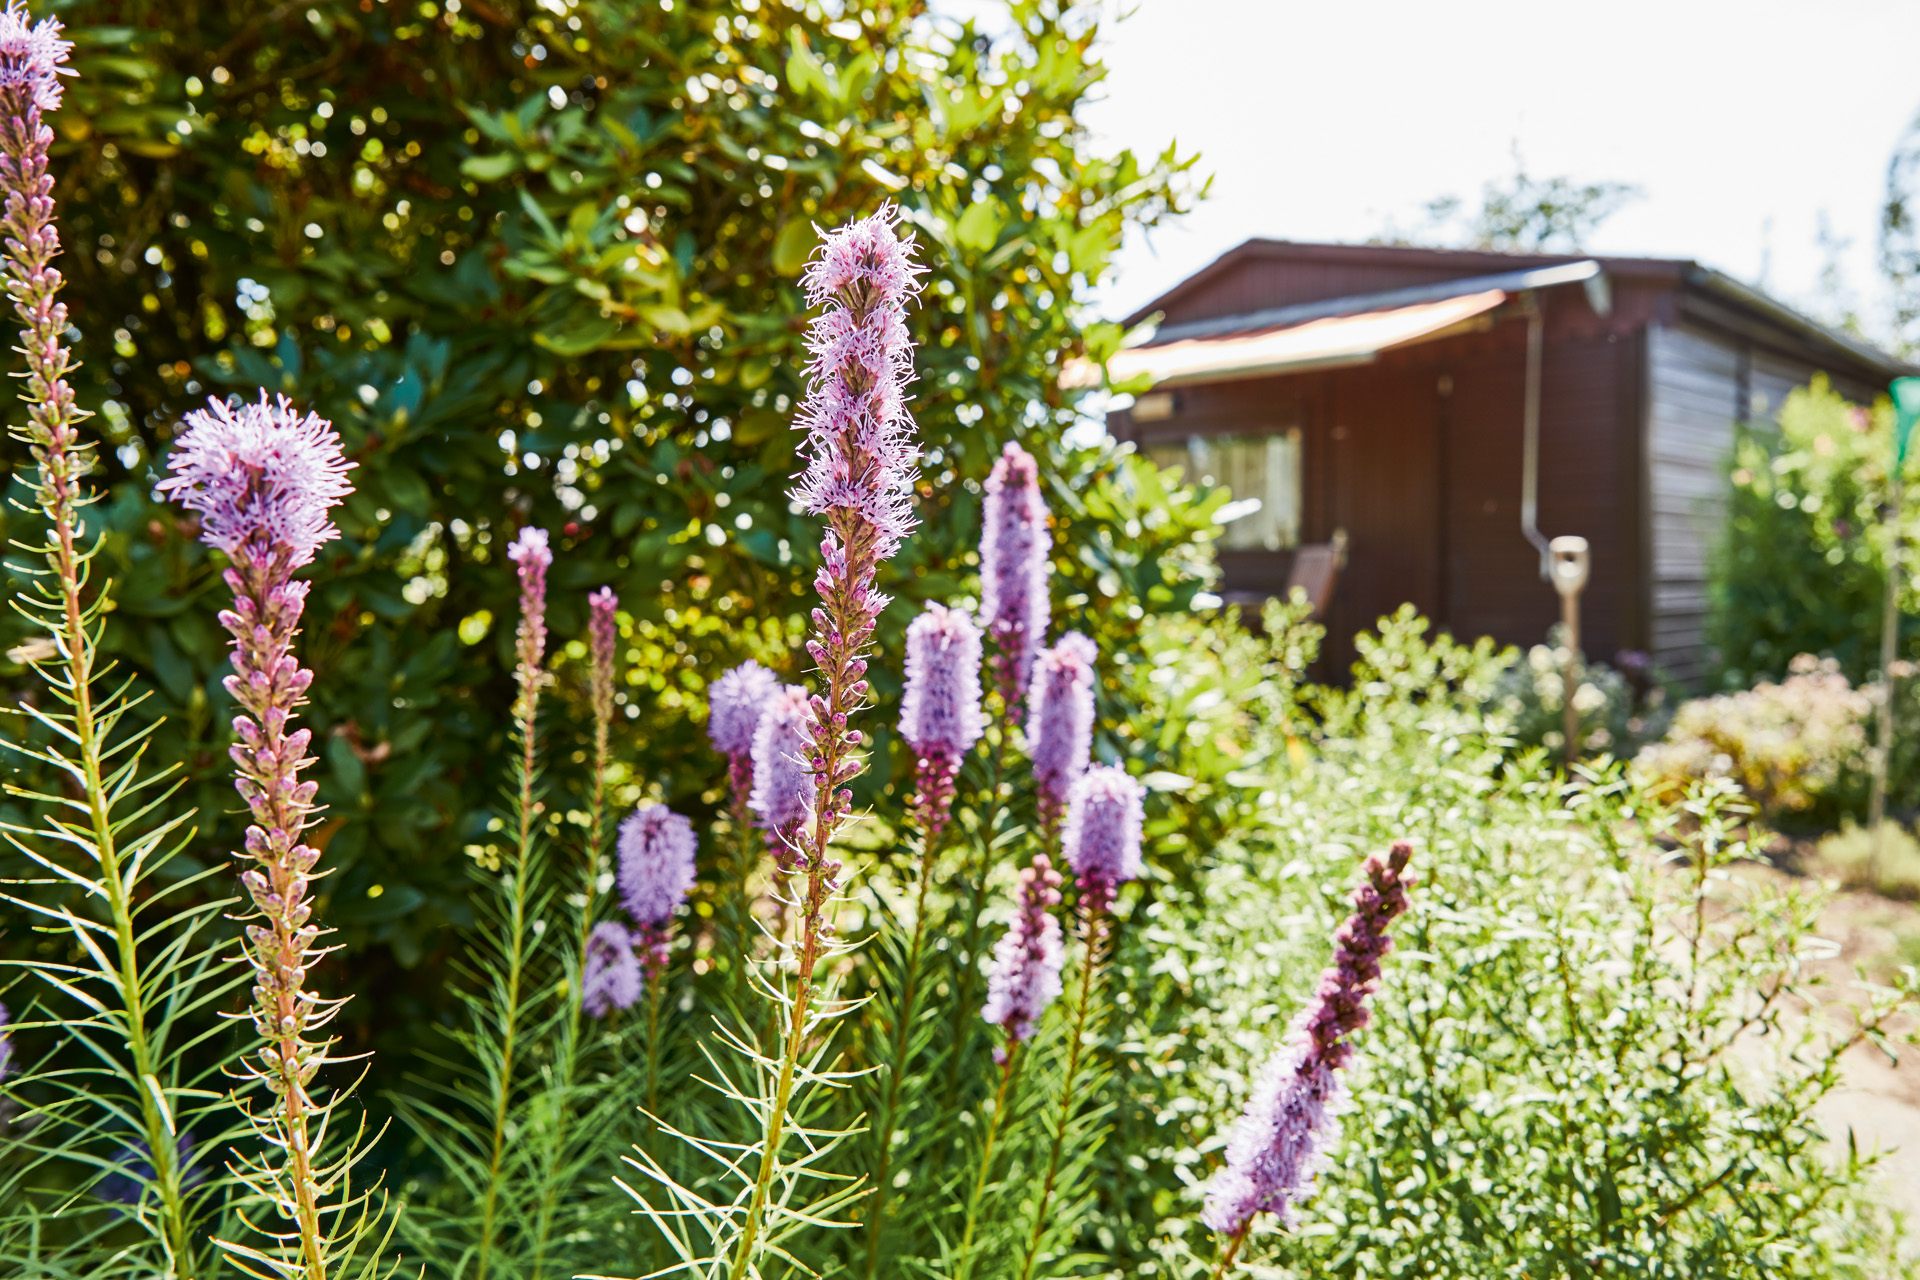 Fiori di perenni lilla all'interno di un giardino, sullo sfondo una casetta da giardino corredata di tenda da sole